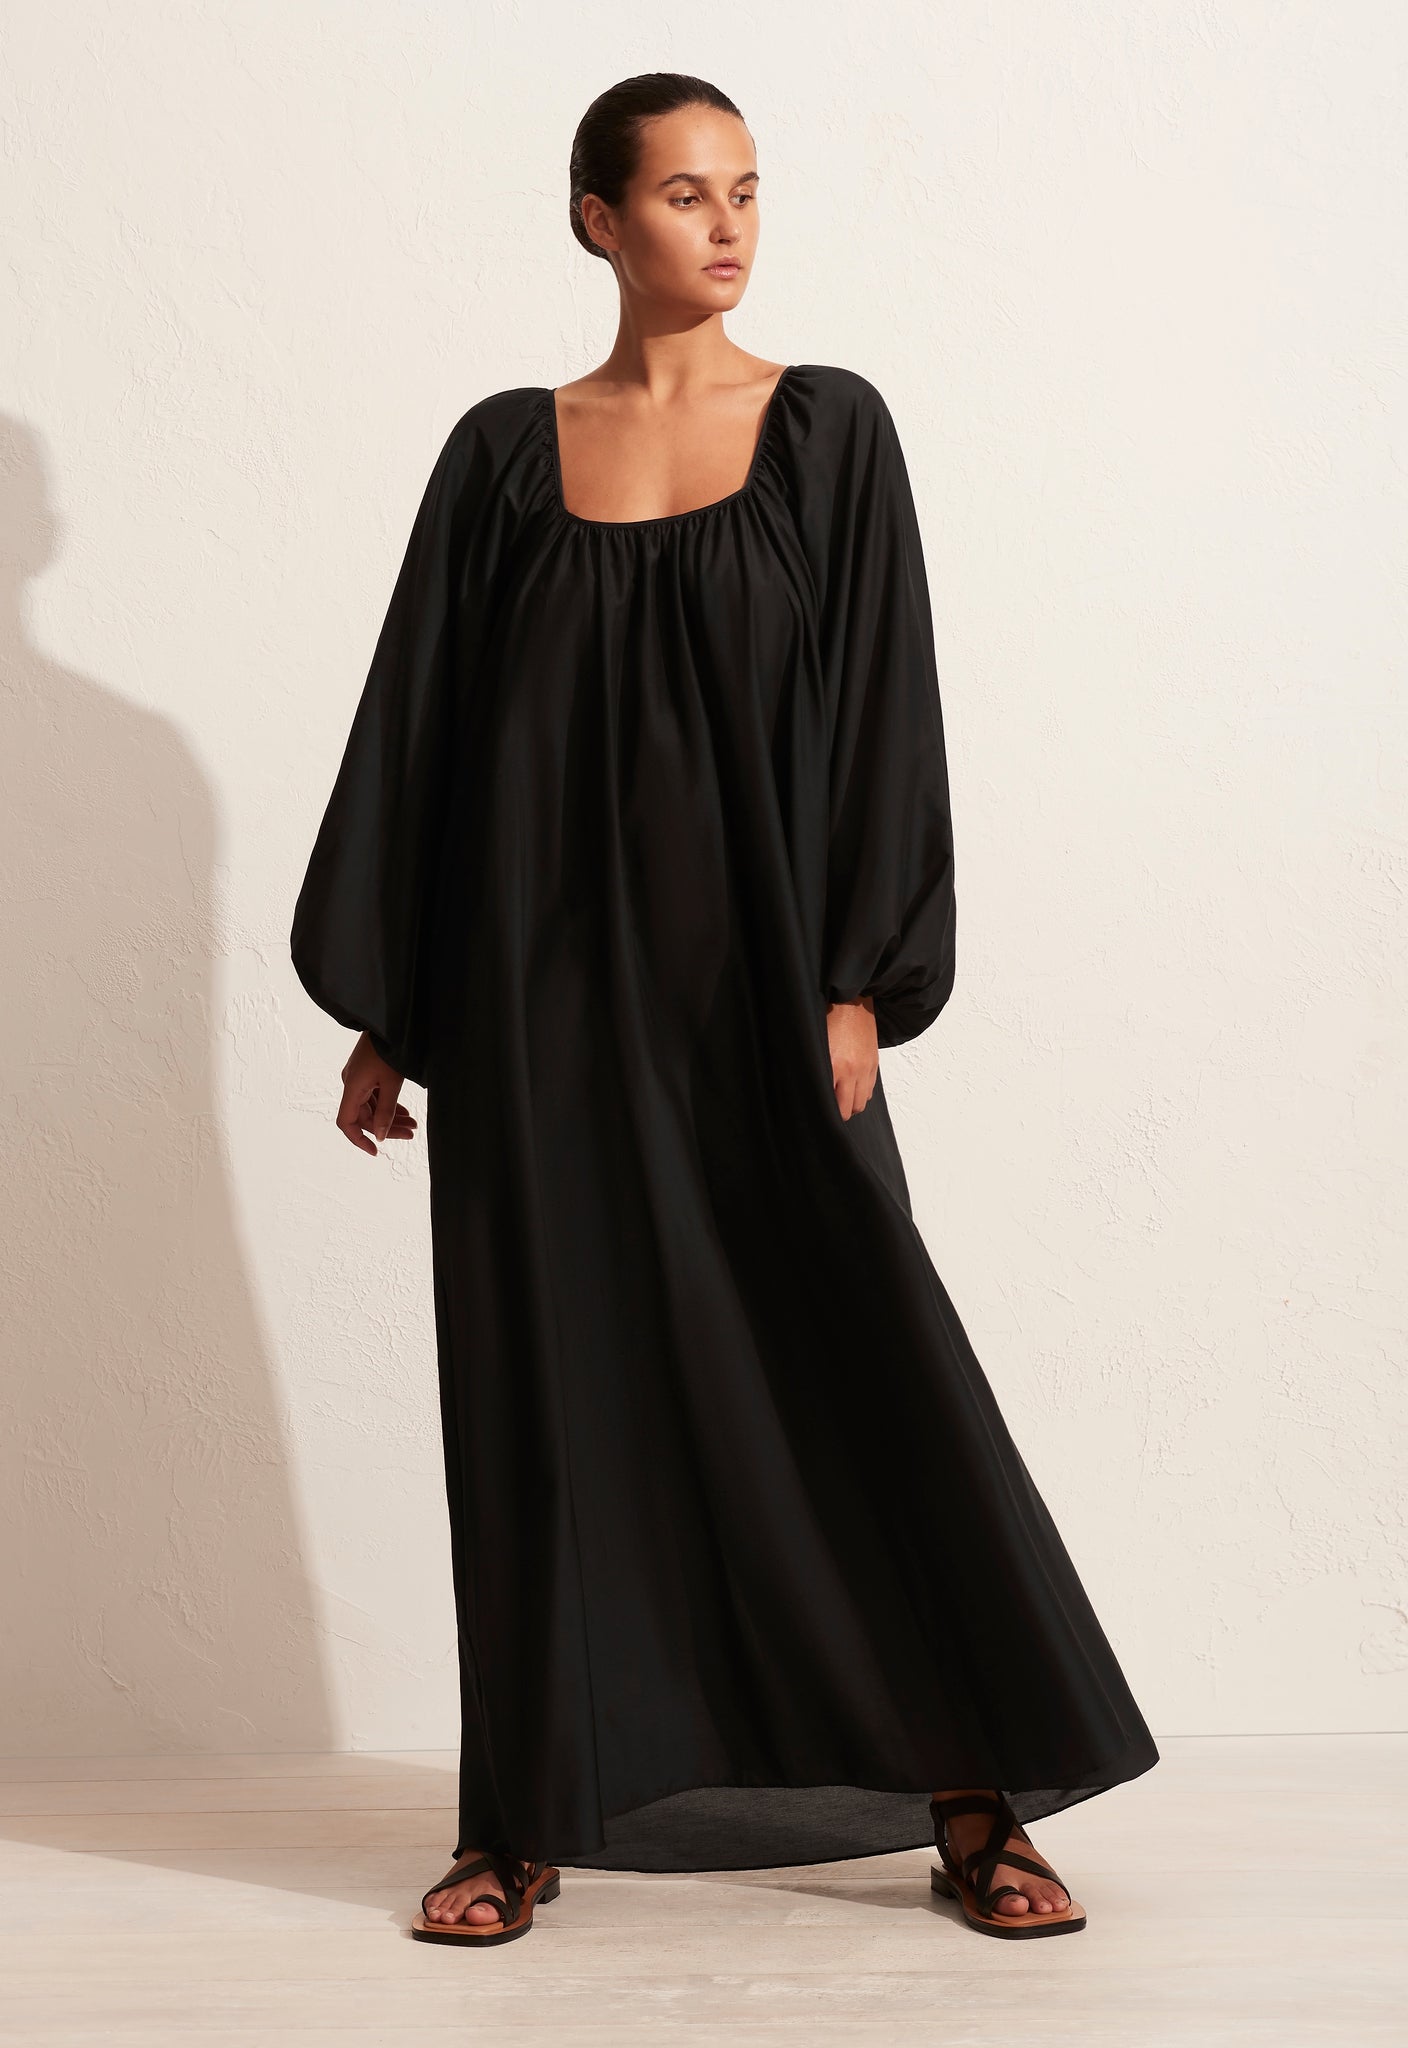 Decolette Dress - Black - Matteau